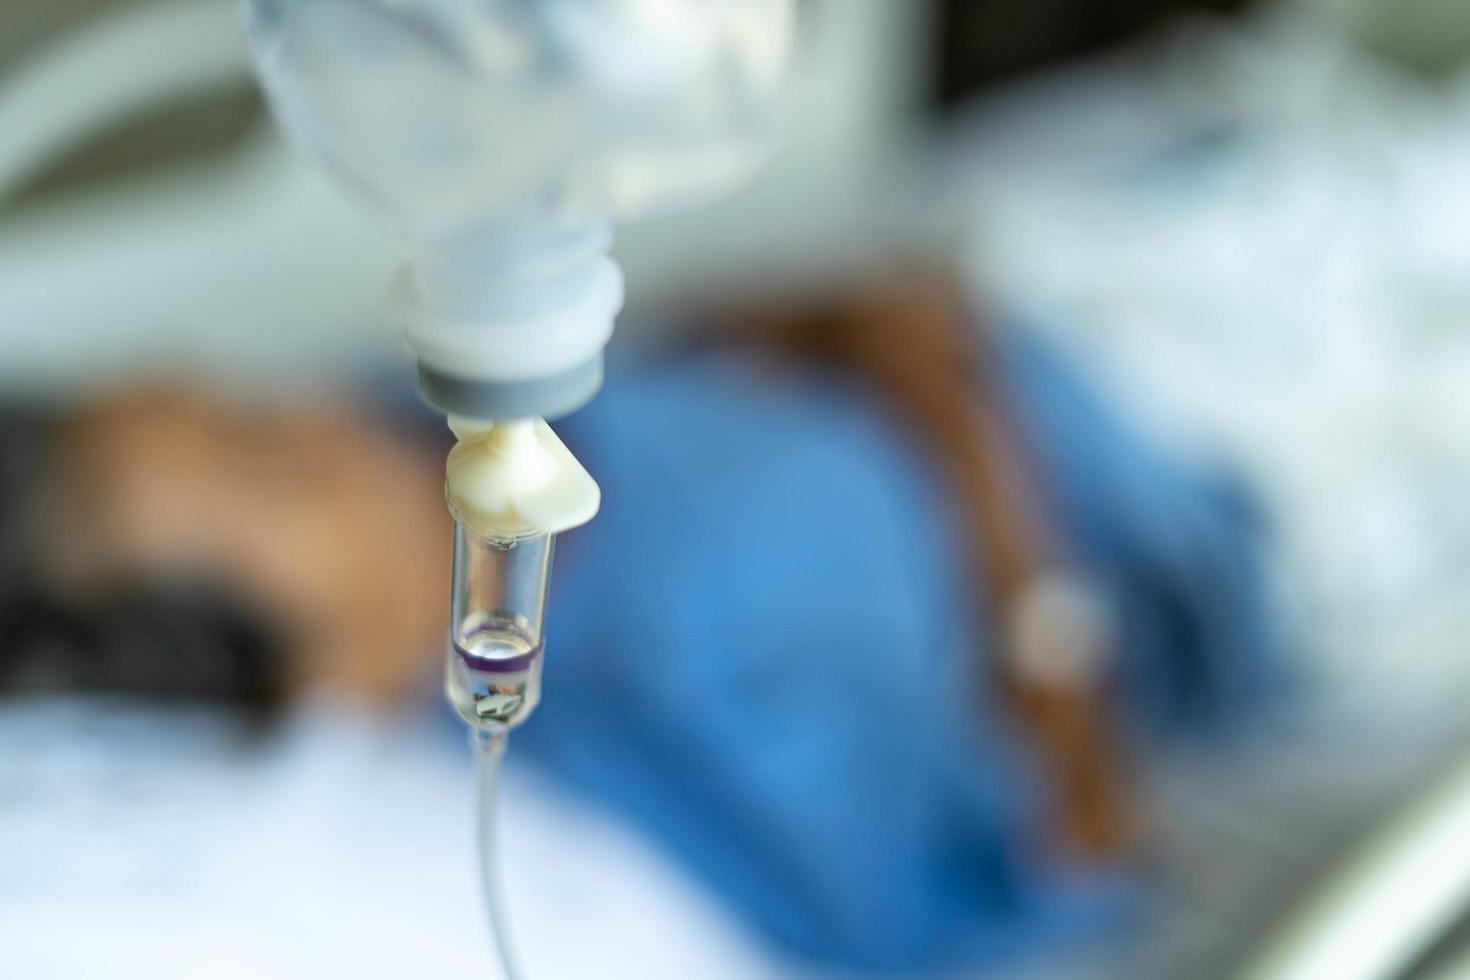 um close-up de um frasco de solução salina amarrado a uma agulha espetada na mão de uma paciente deitada em uma cama de hospital. conceitos médicos e de tratamento de pacientes foto